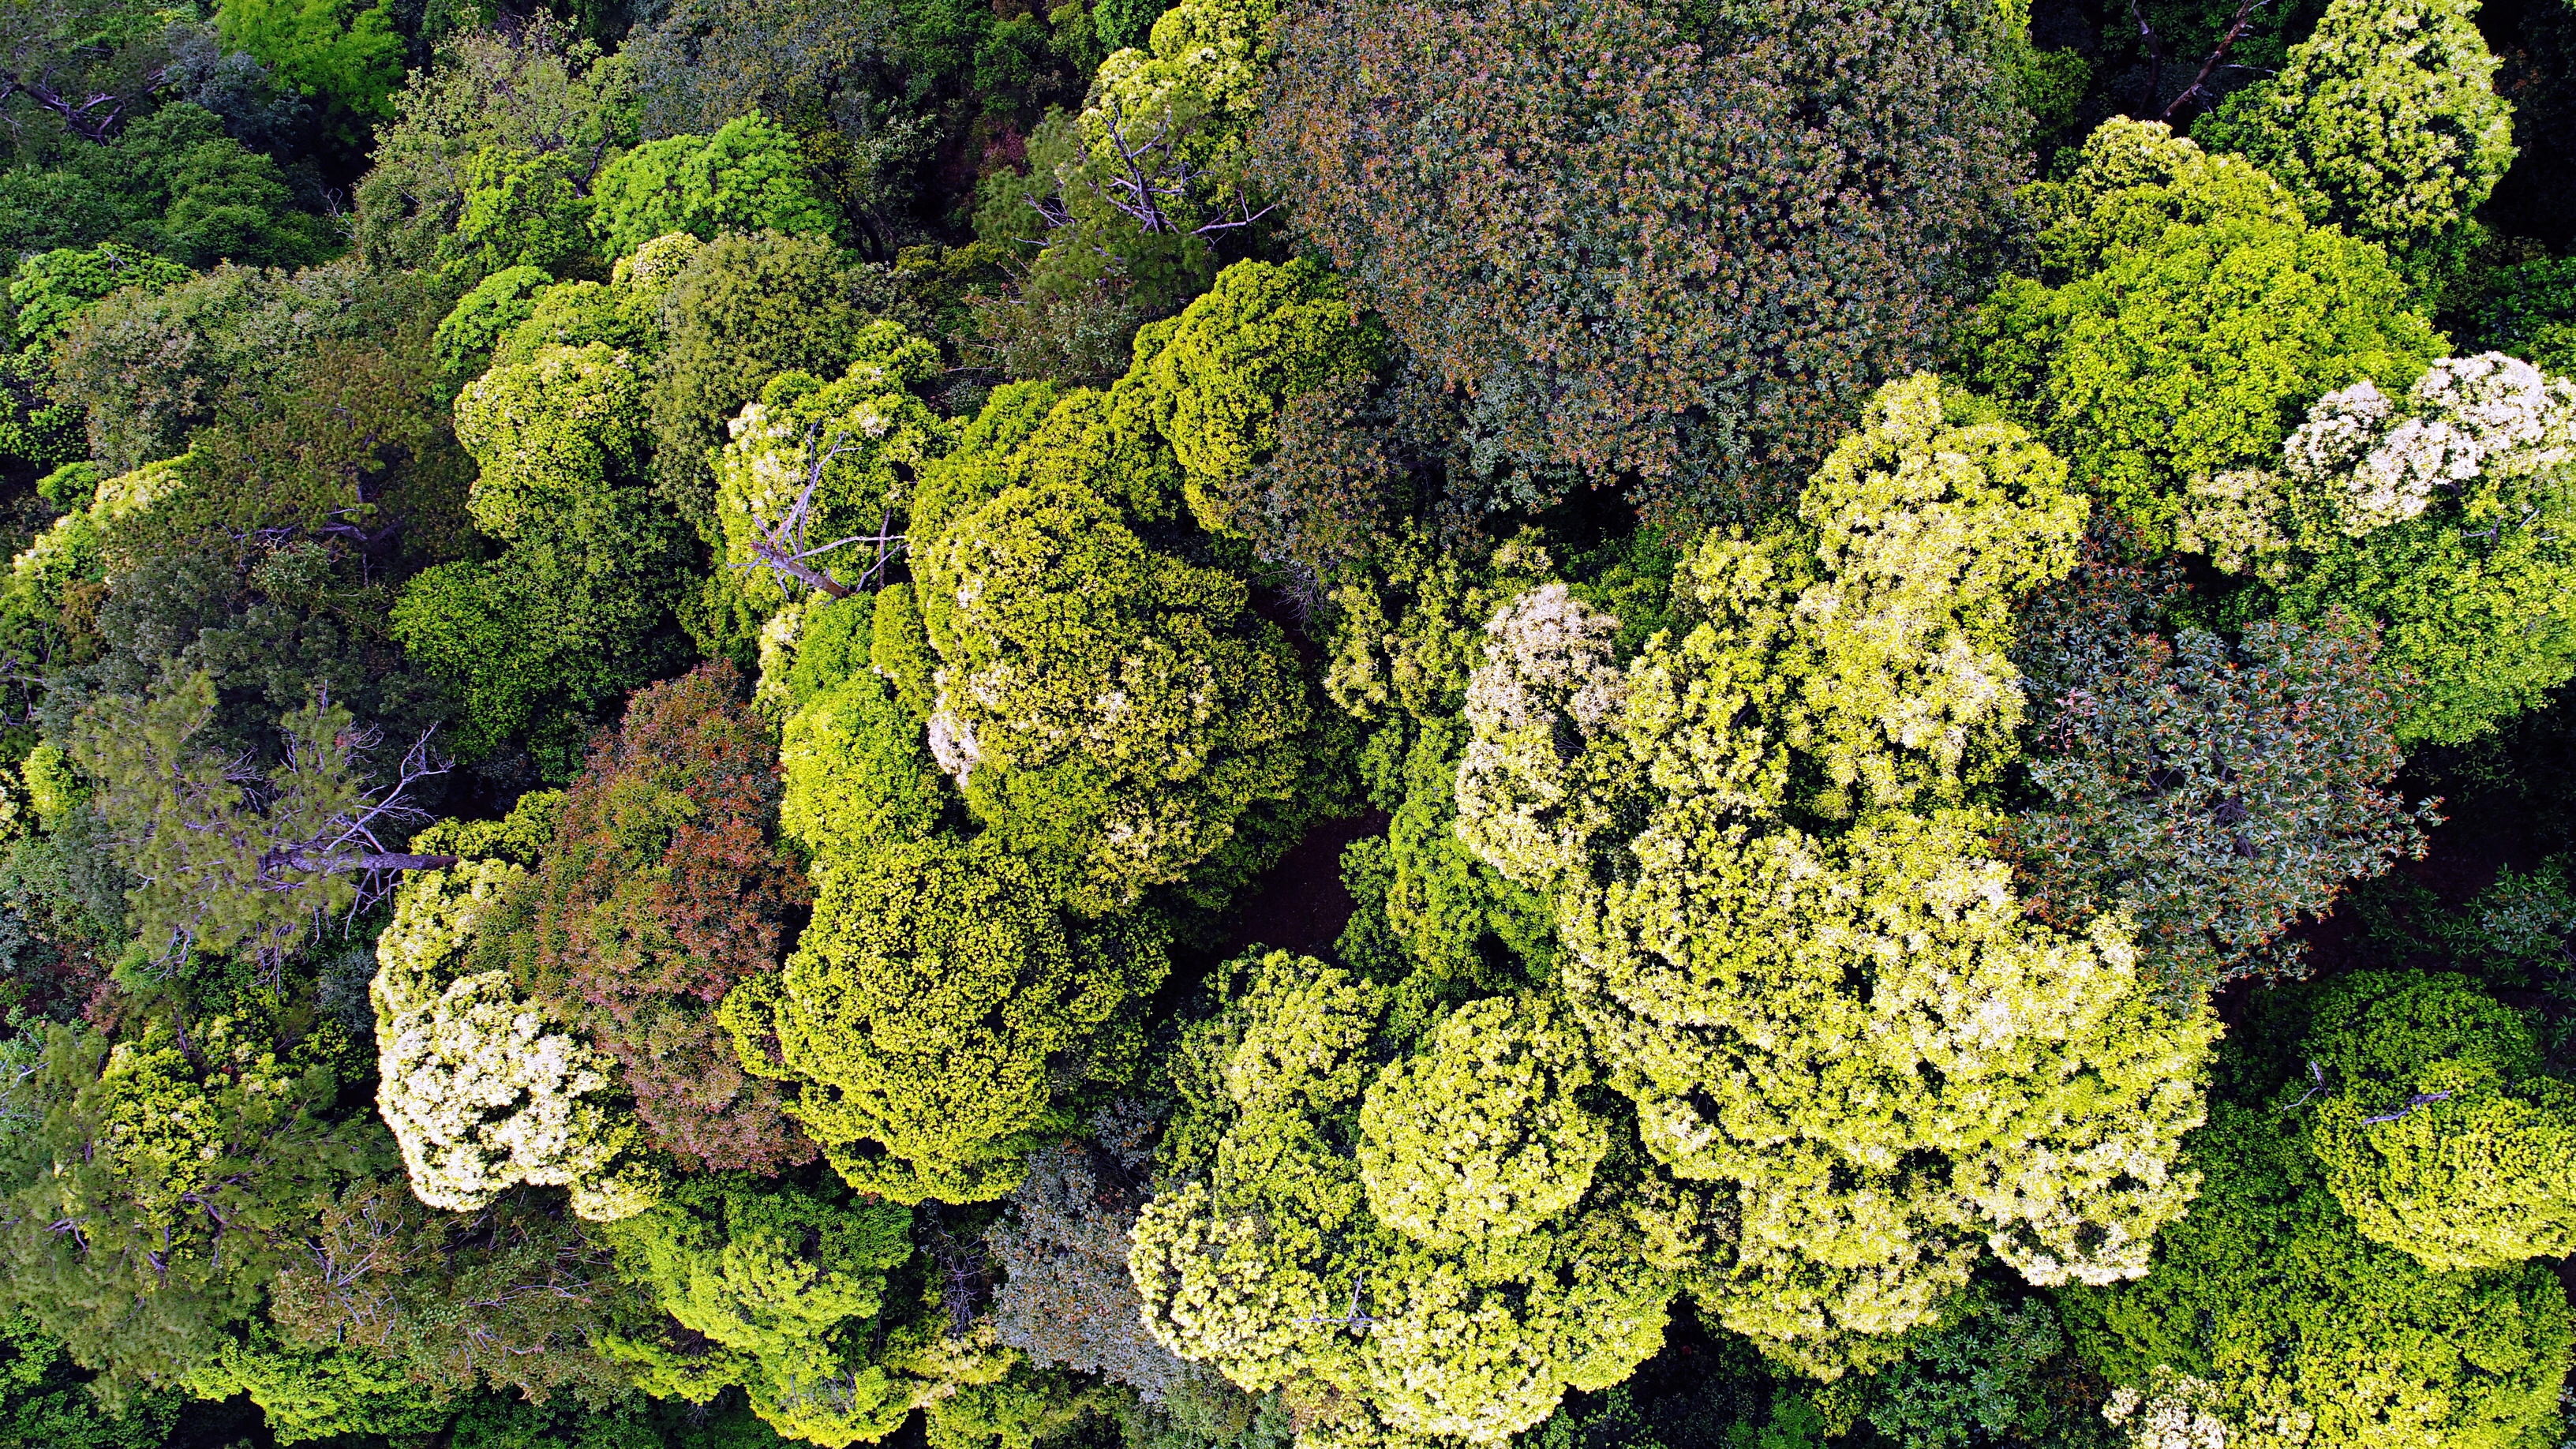 植物所在亚热带森林群落生物多样性维持机制研究中取得进展